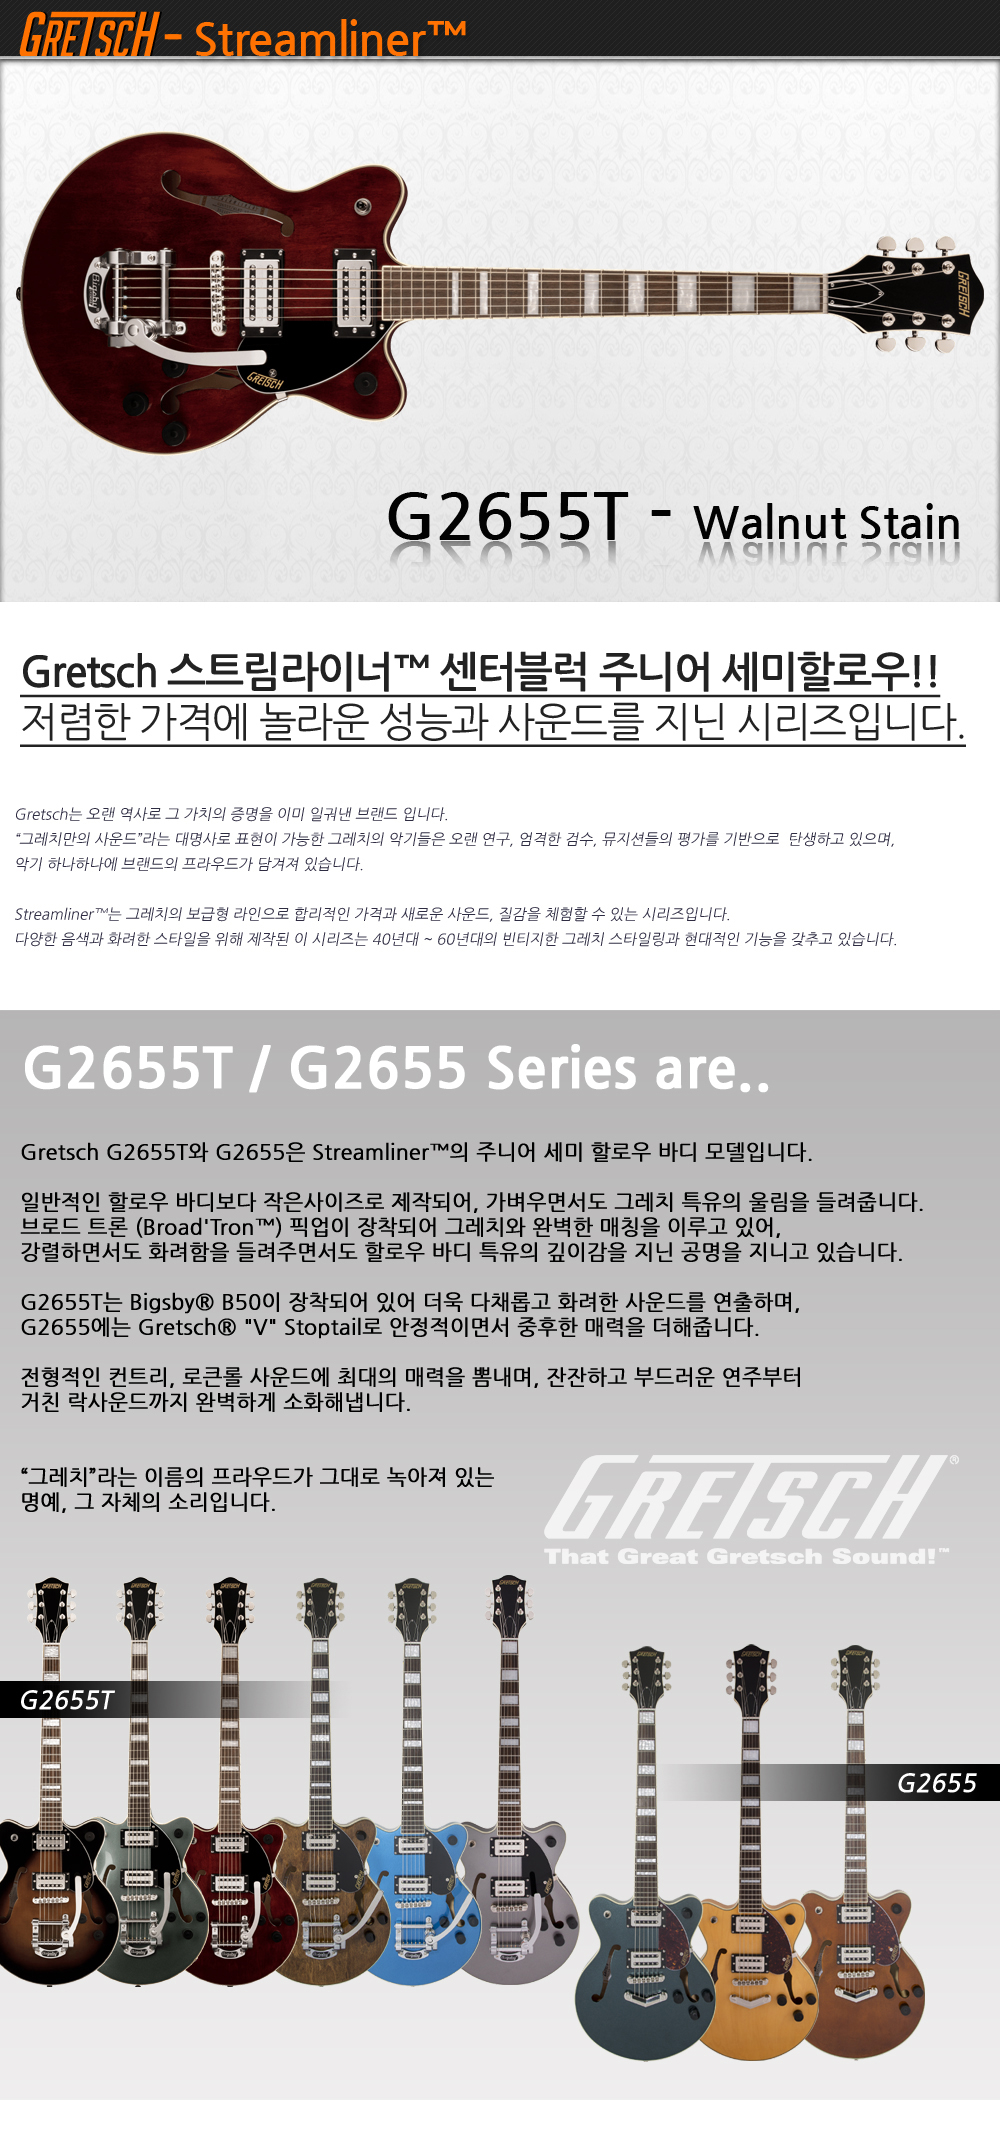 Gretsch-G2655T-WalnutStain_1_092736.jpg